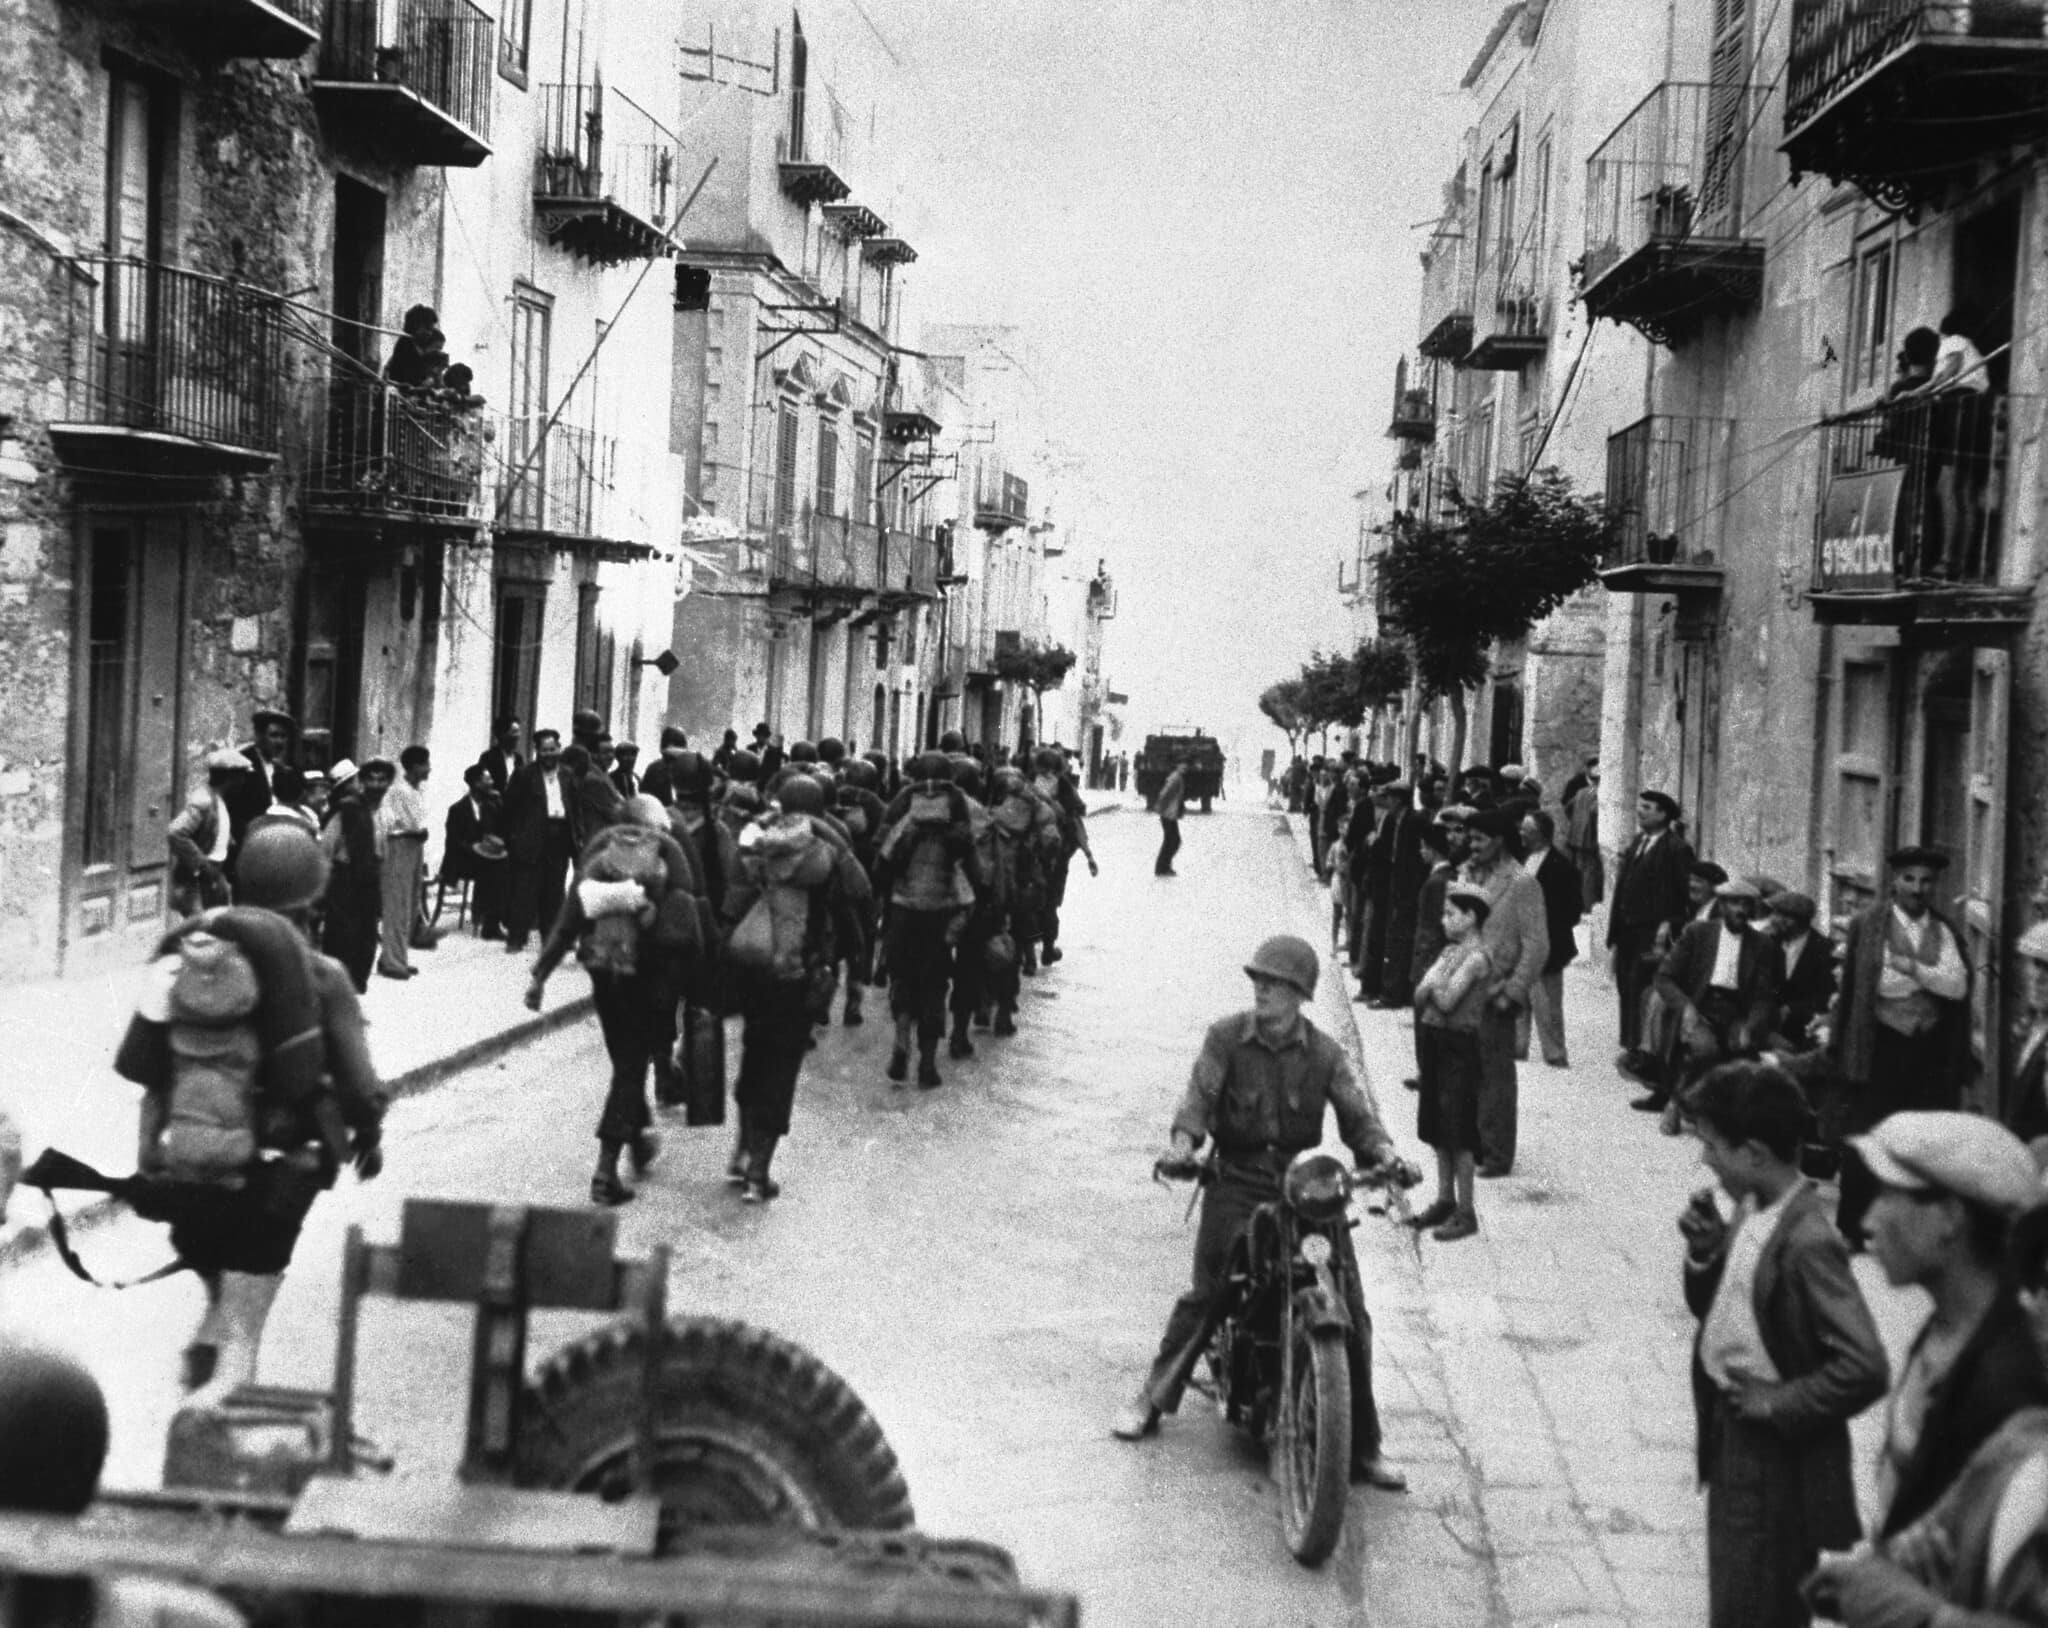 כוחות בנות הברית בסיציליה במהלך הפלישה לאי האיטלקי ב־26 ביוני, 1943 (צילום: AP Photo)